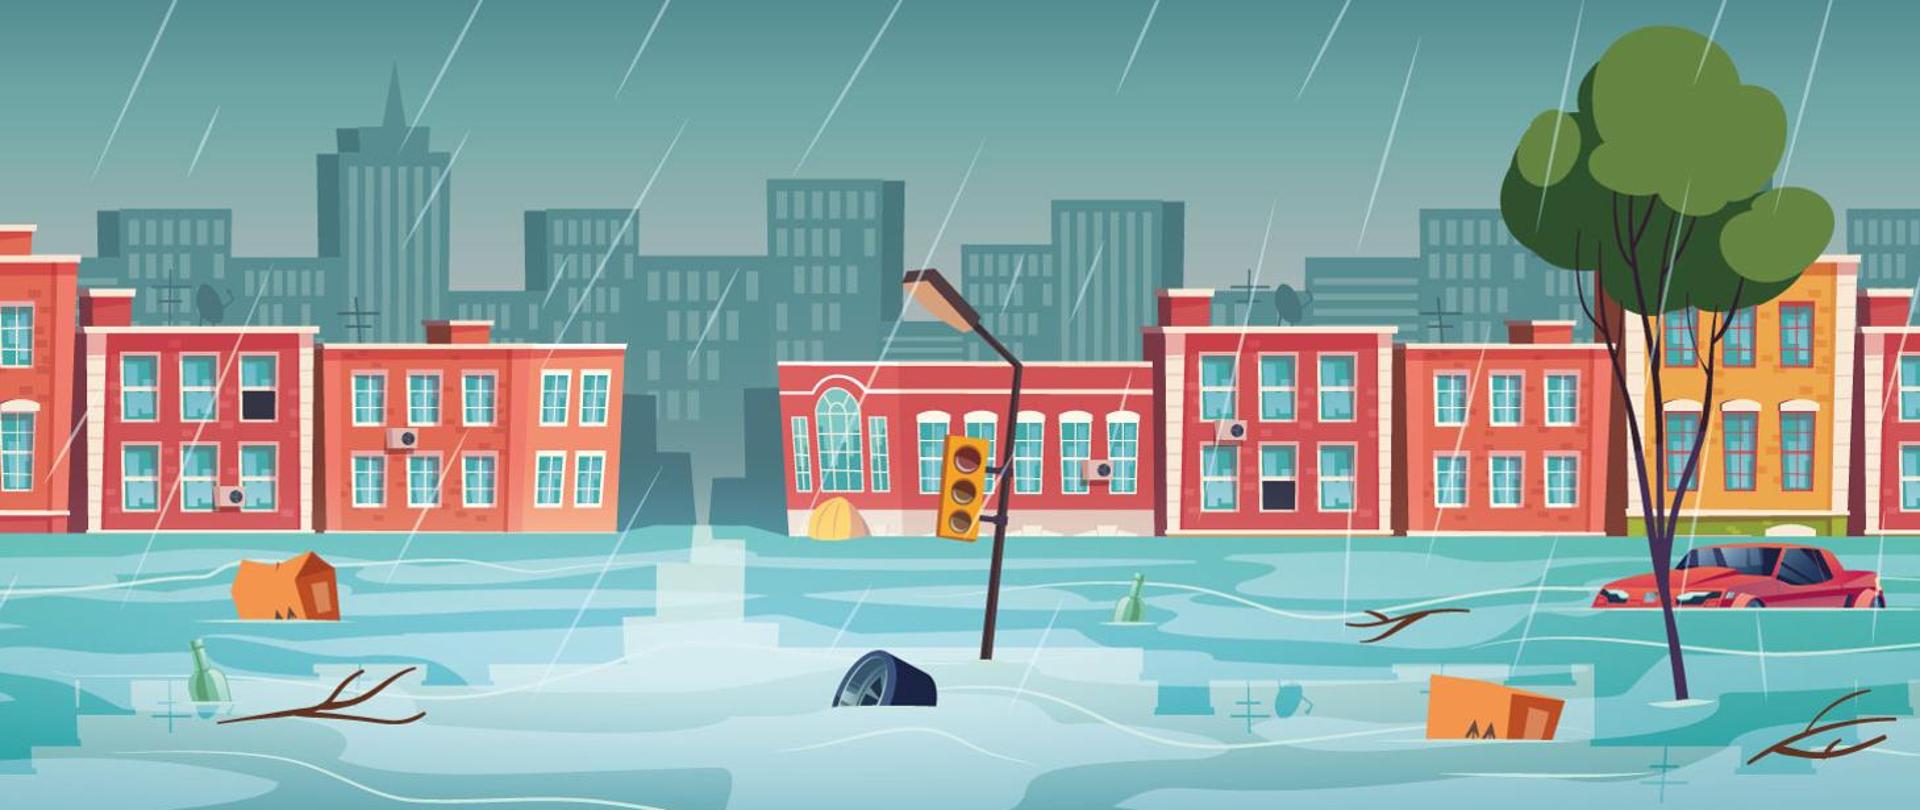 Rysunek przedstawiający zalane miasto w trakcie deszczu